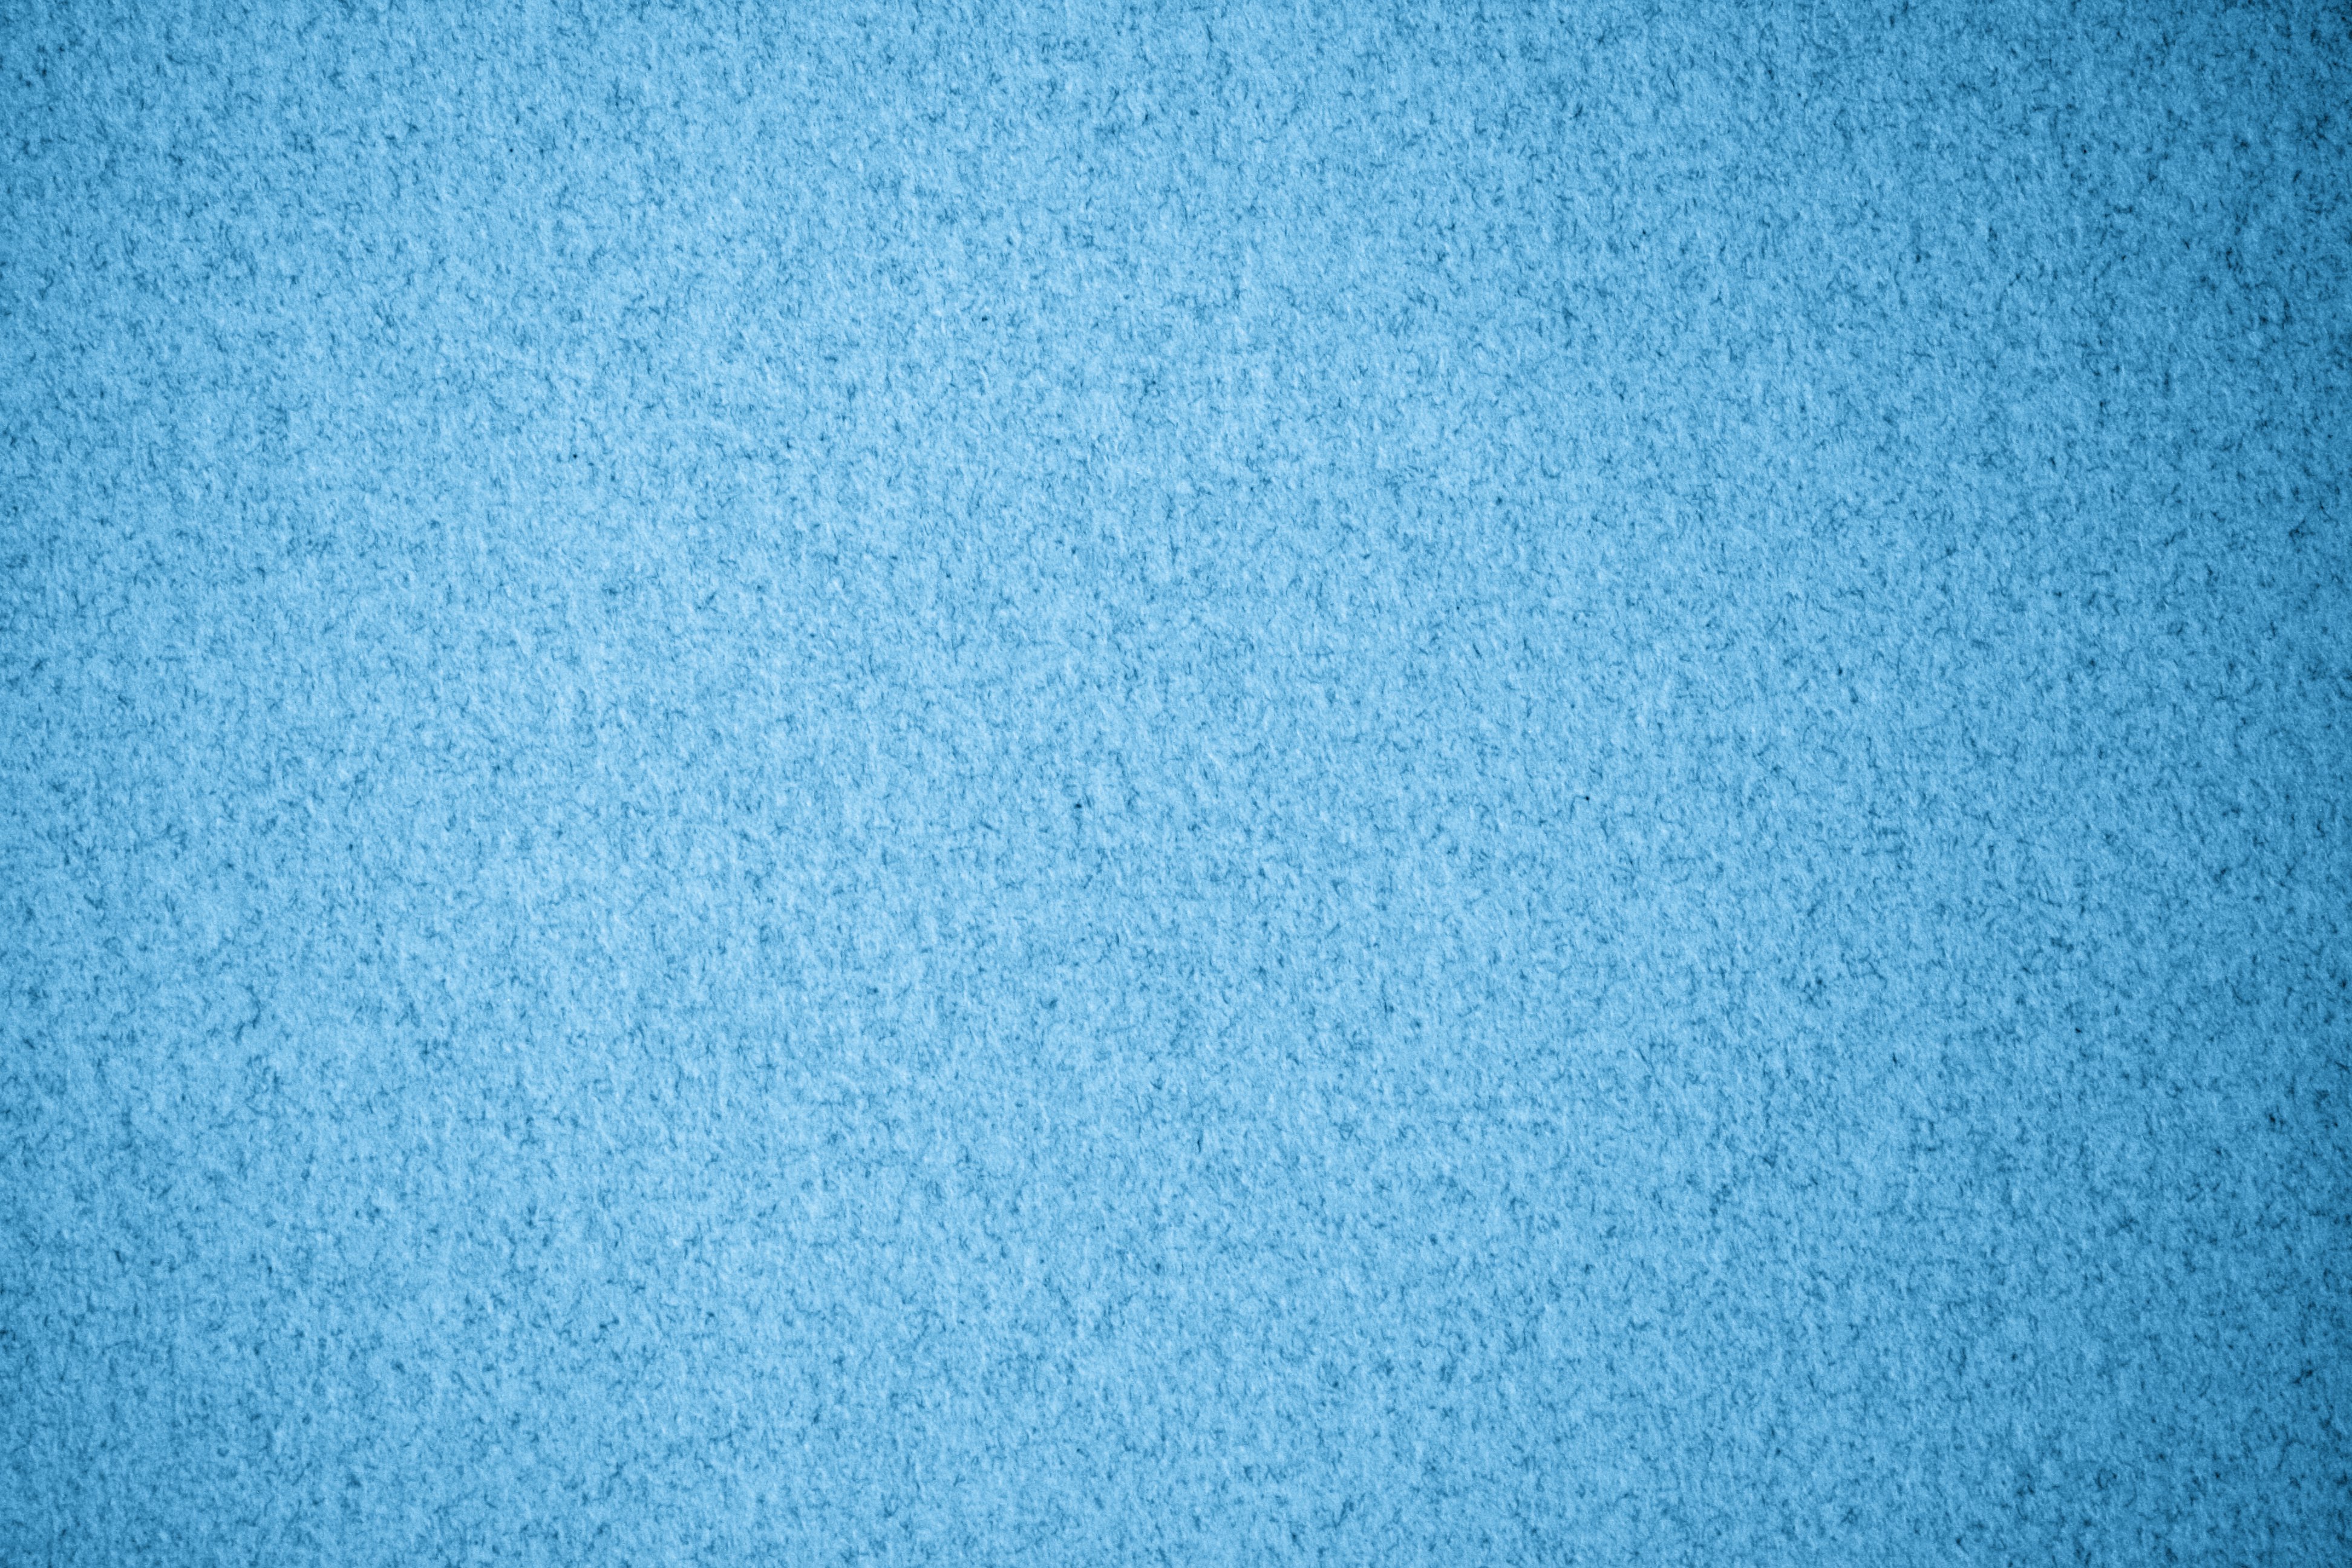 fondo de pantalla con textura azul,azul,agua,turquesa,azul cobalto,modelo